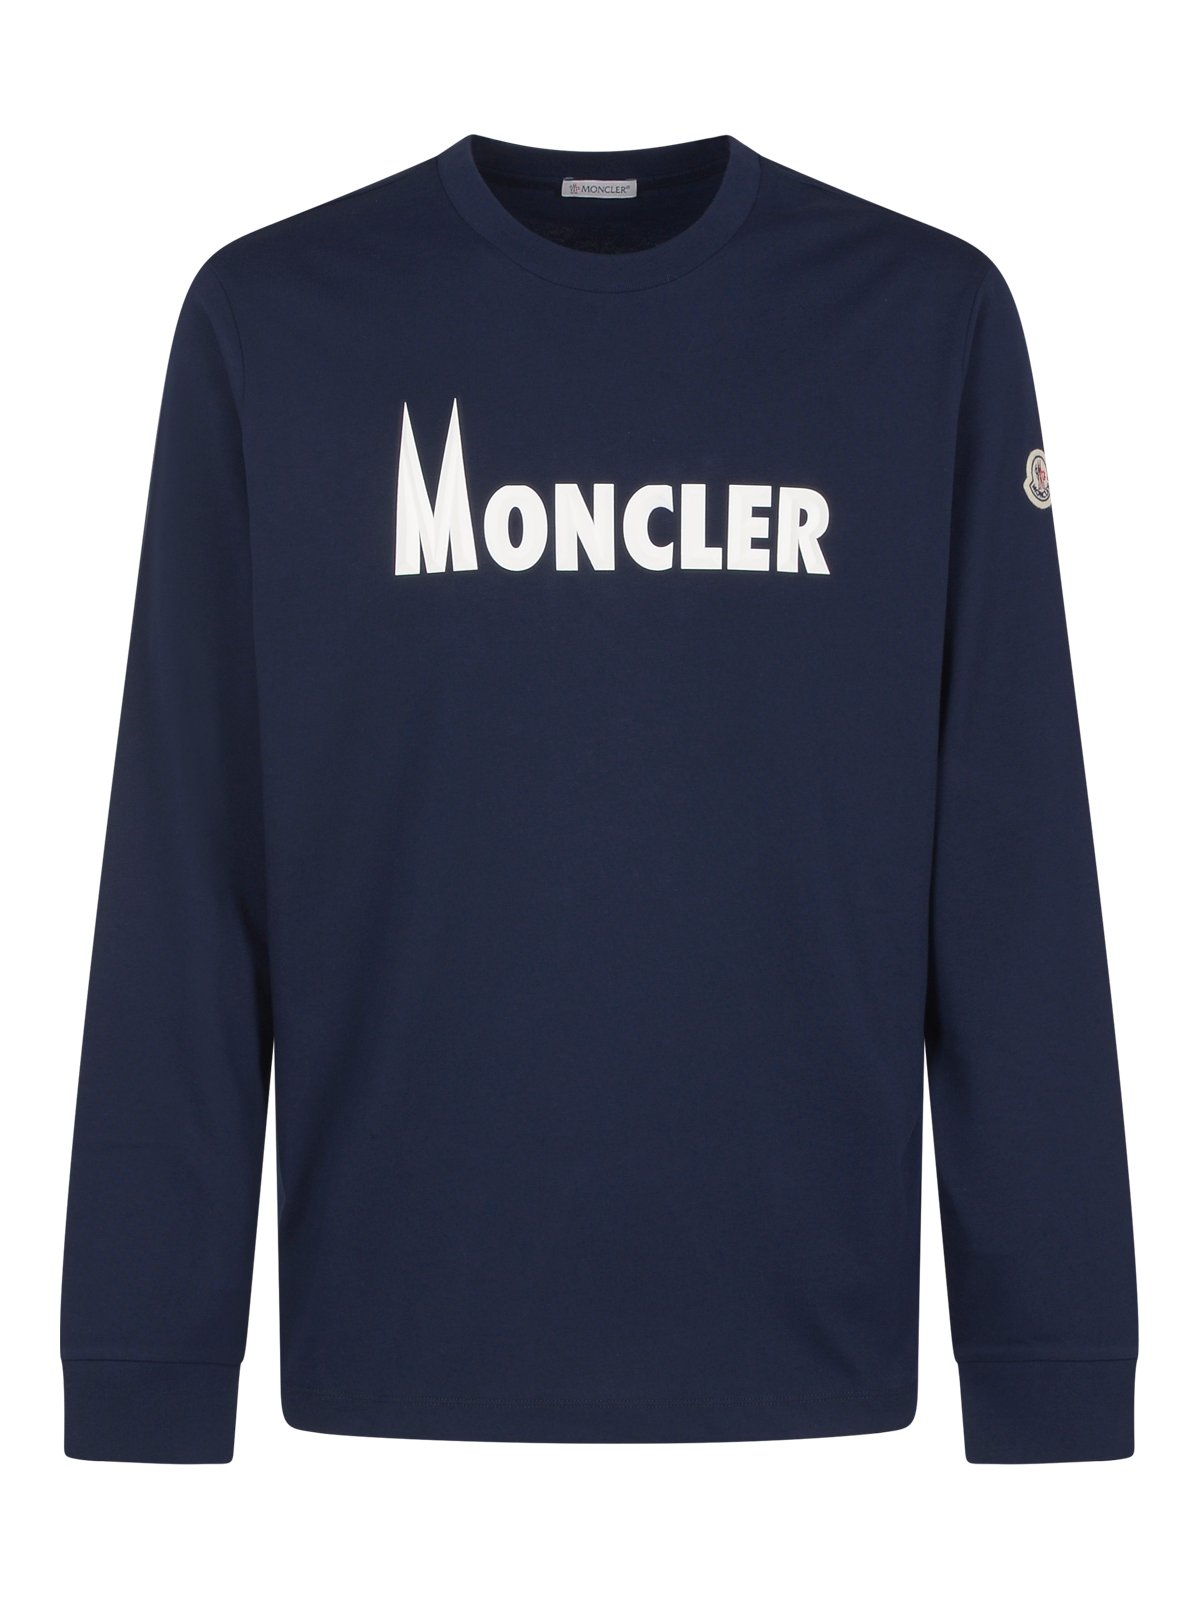 Moncler 로고 프린트 긴팔 티셔츠